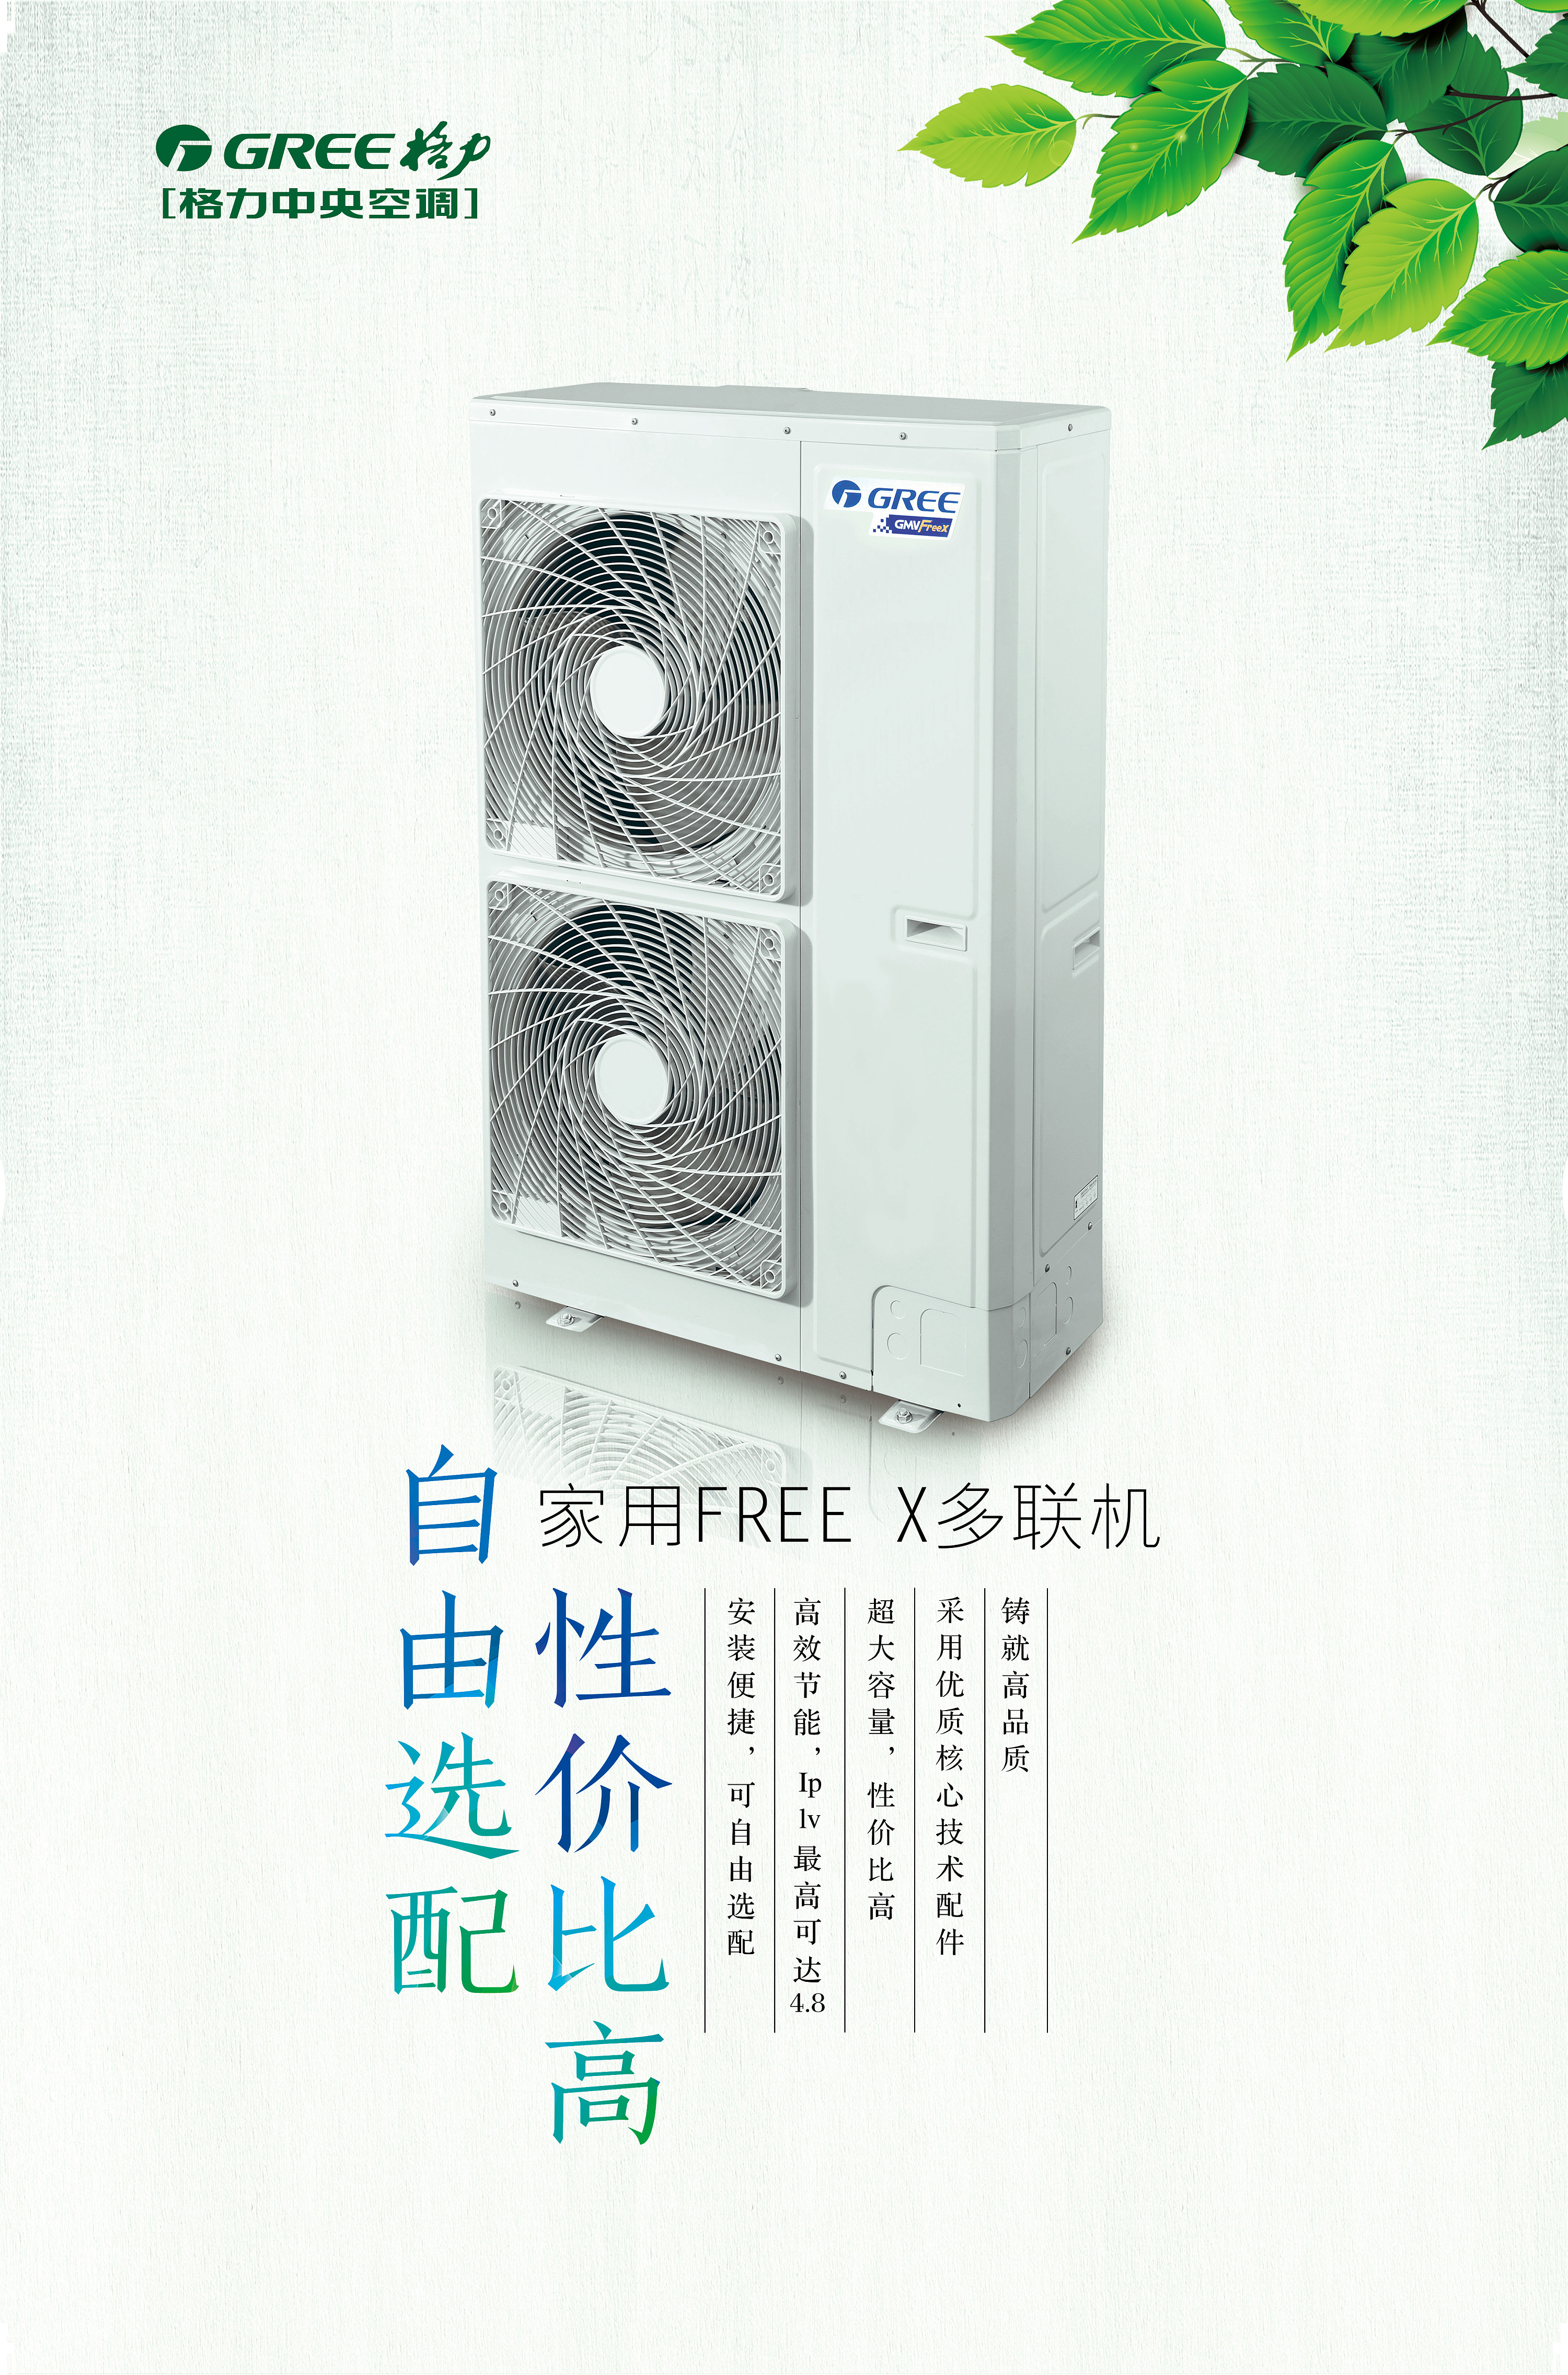 壁画空调 格力11.2cm超薄空调亮相CE China_天极网